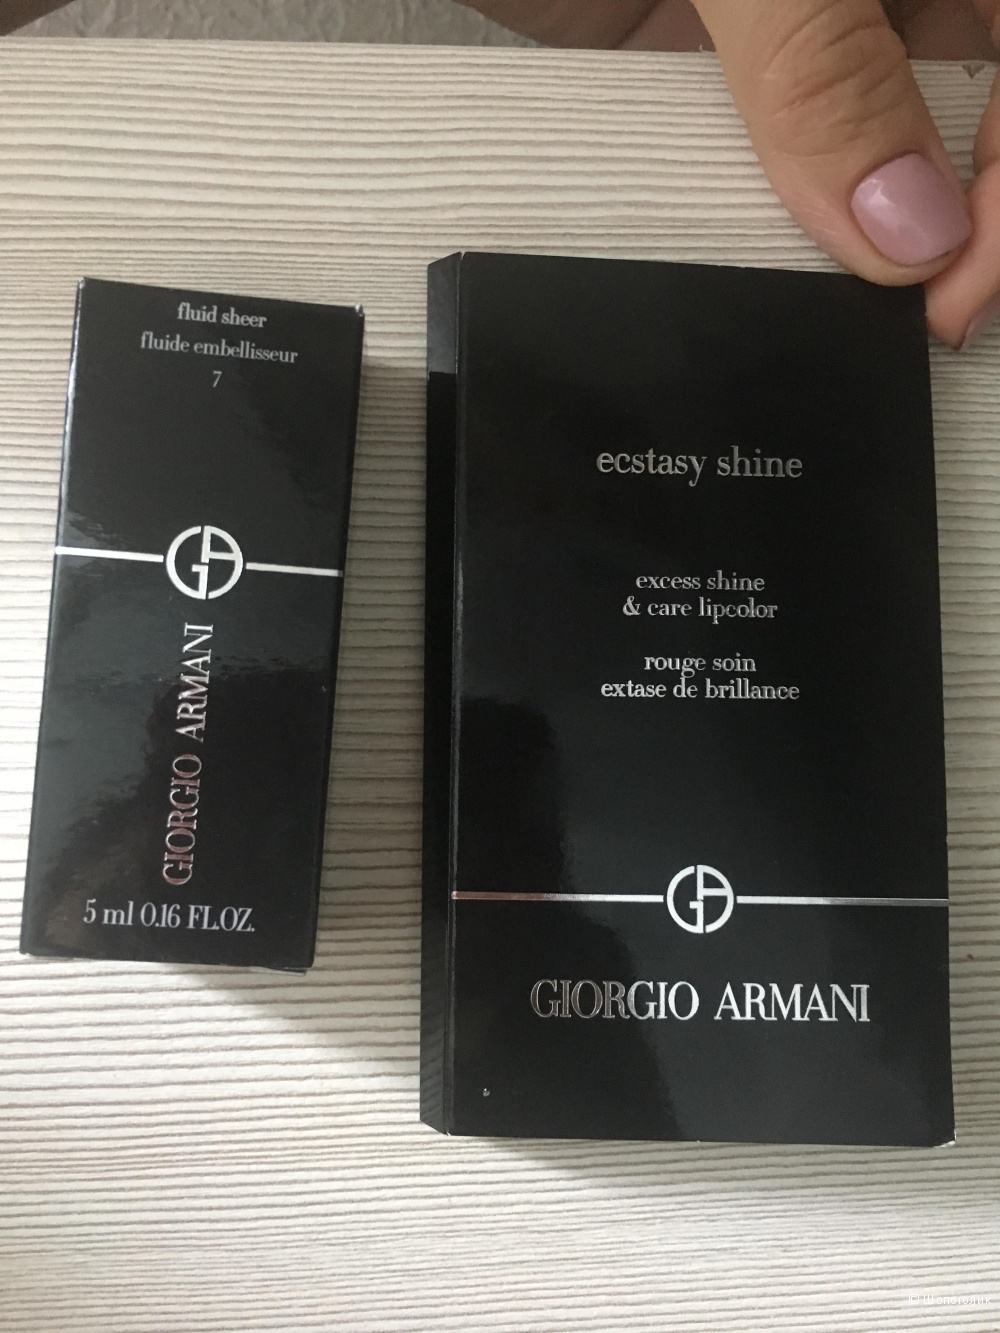 Сет Giorgio Armani fluid sheer 5ml и палетка ecstasy shine 3*0,25